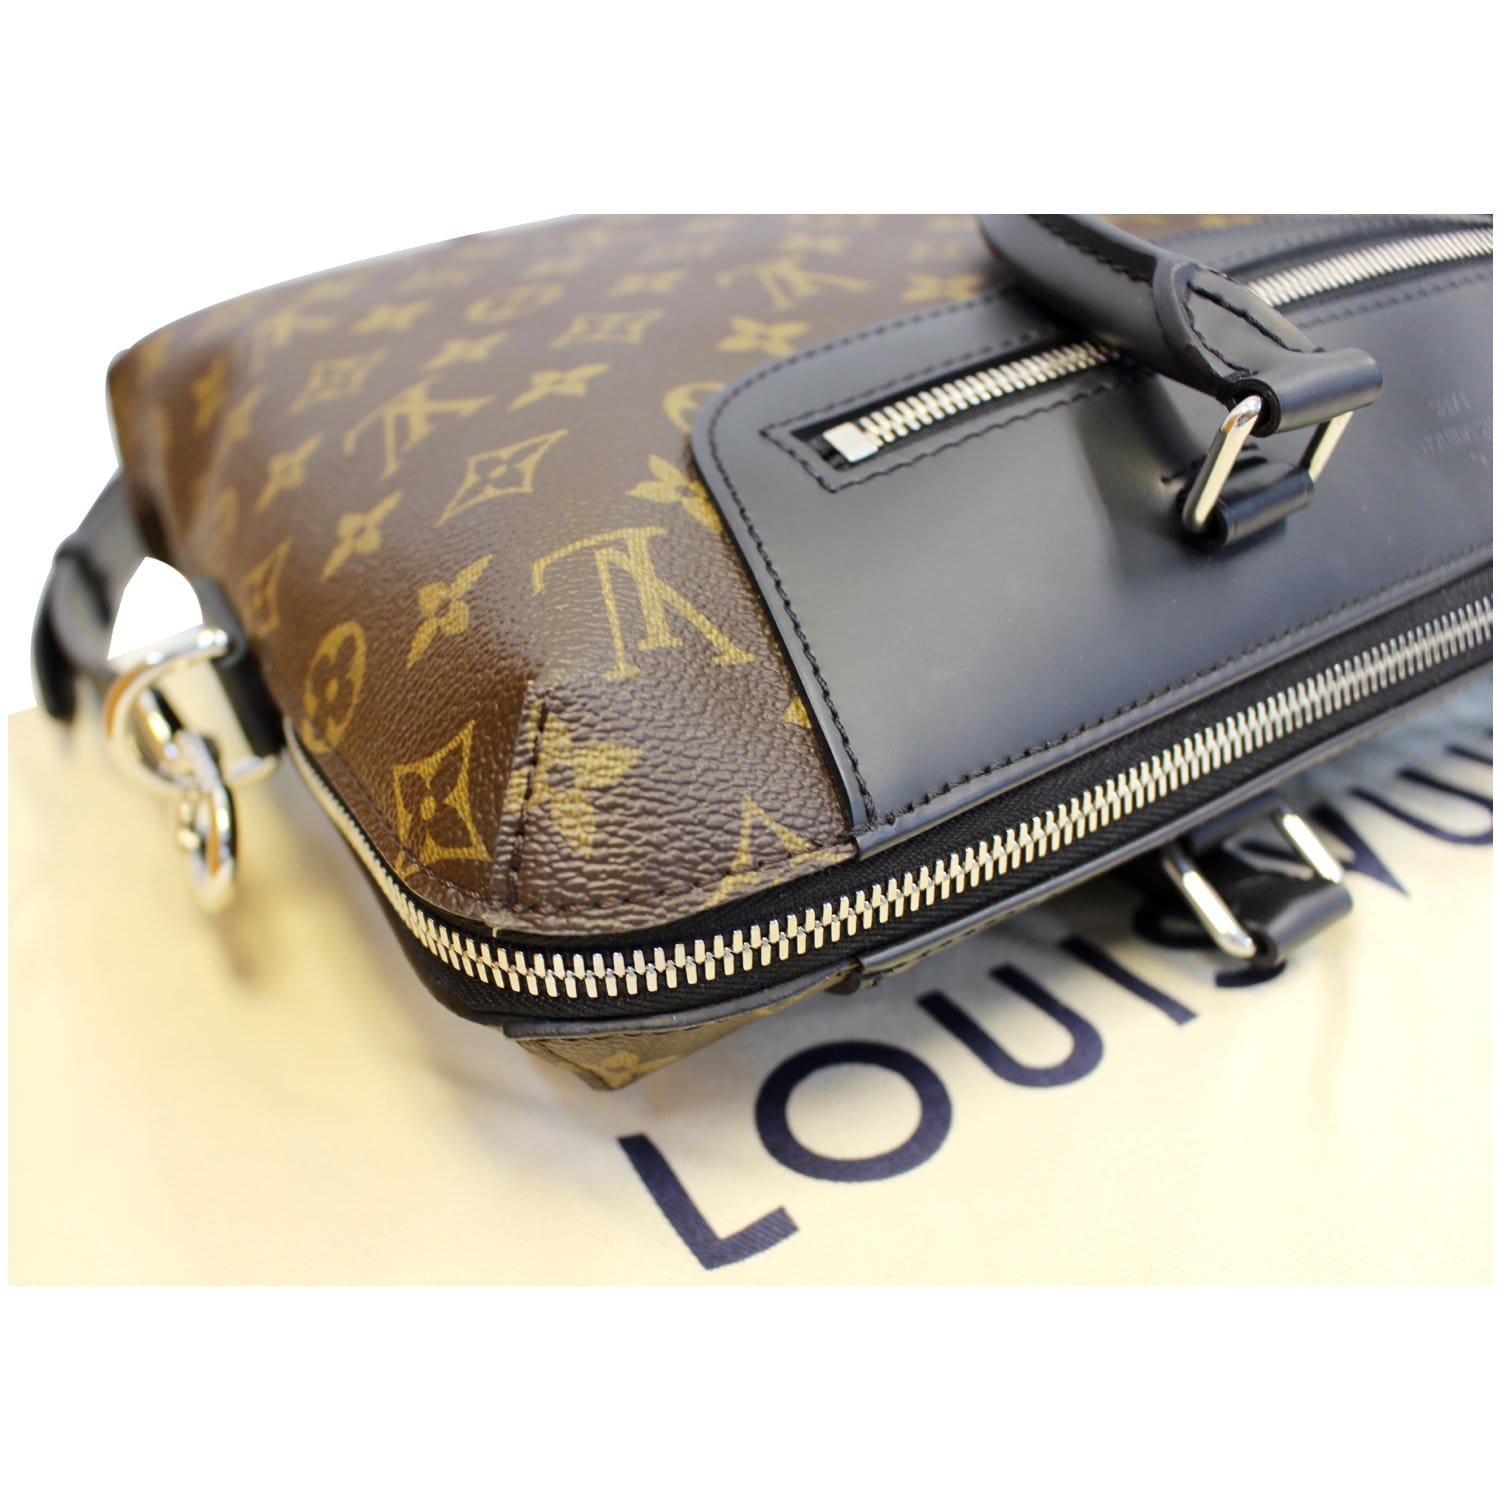 Louis-Vuitton-Macassar-Porte-Documents-Jour-NM-Business-Bag-M54019